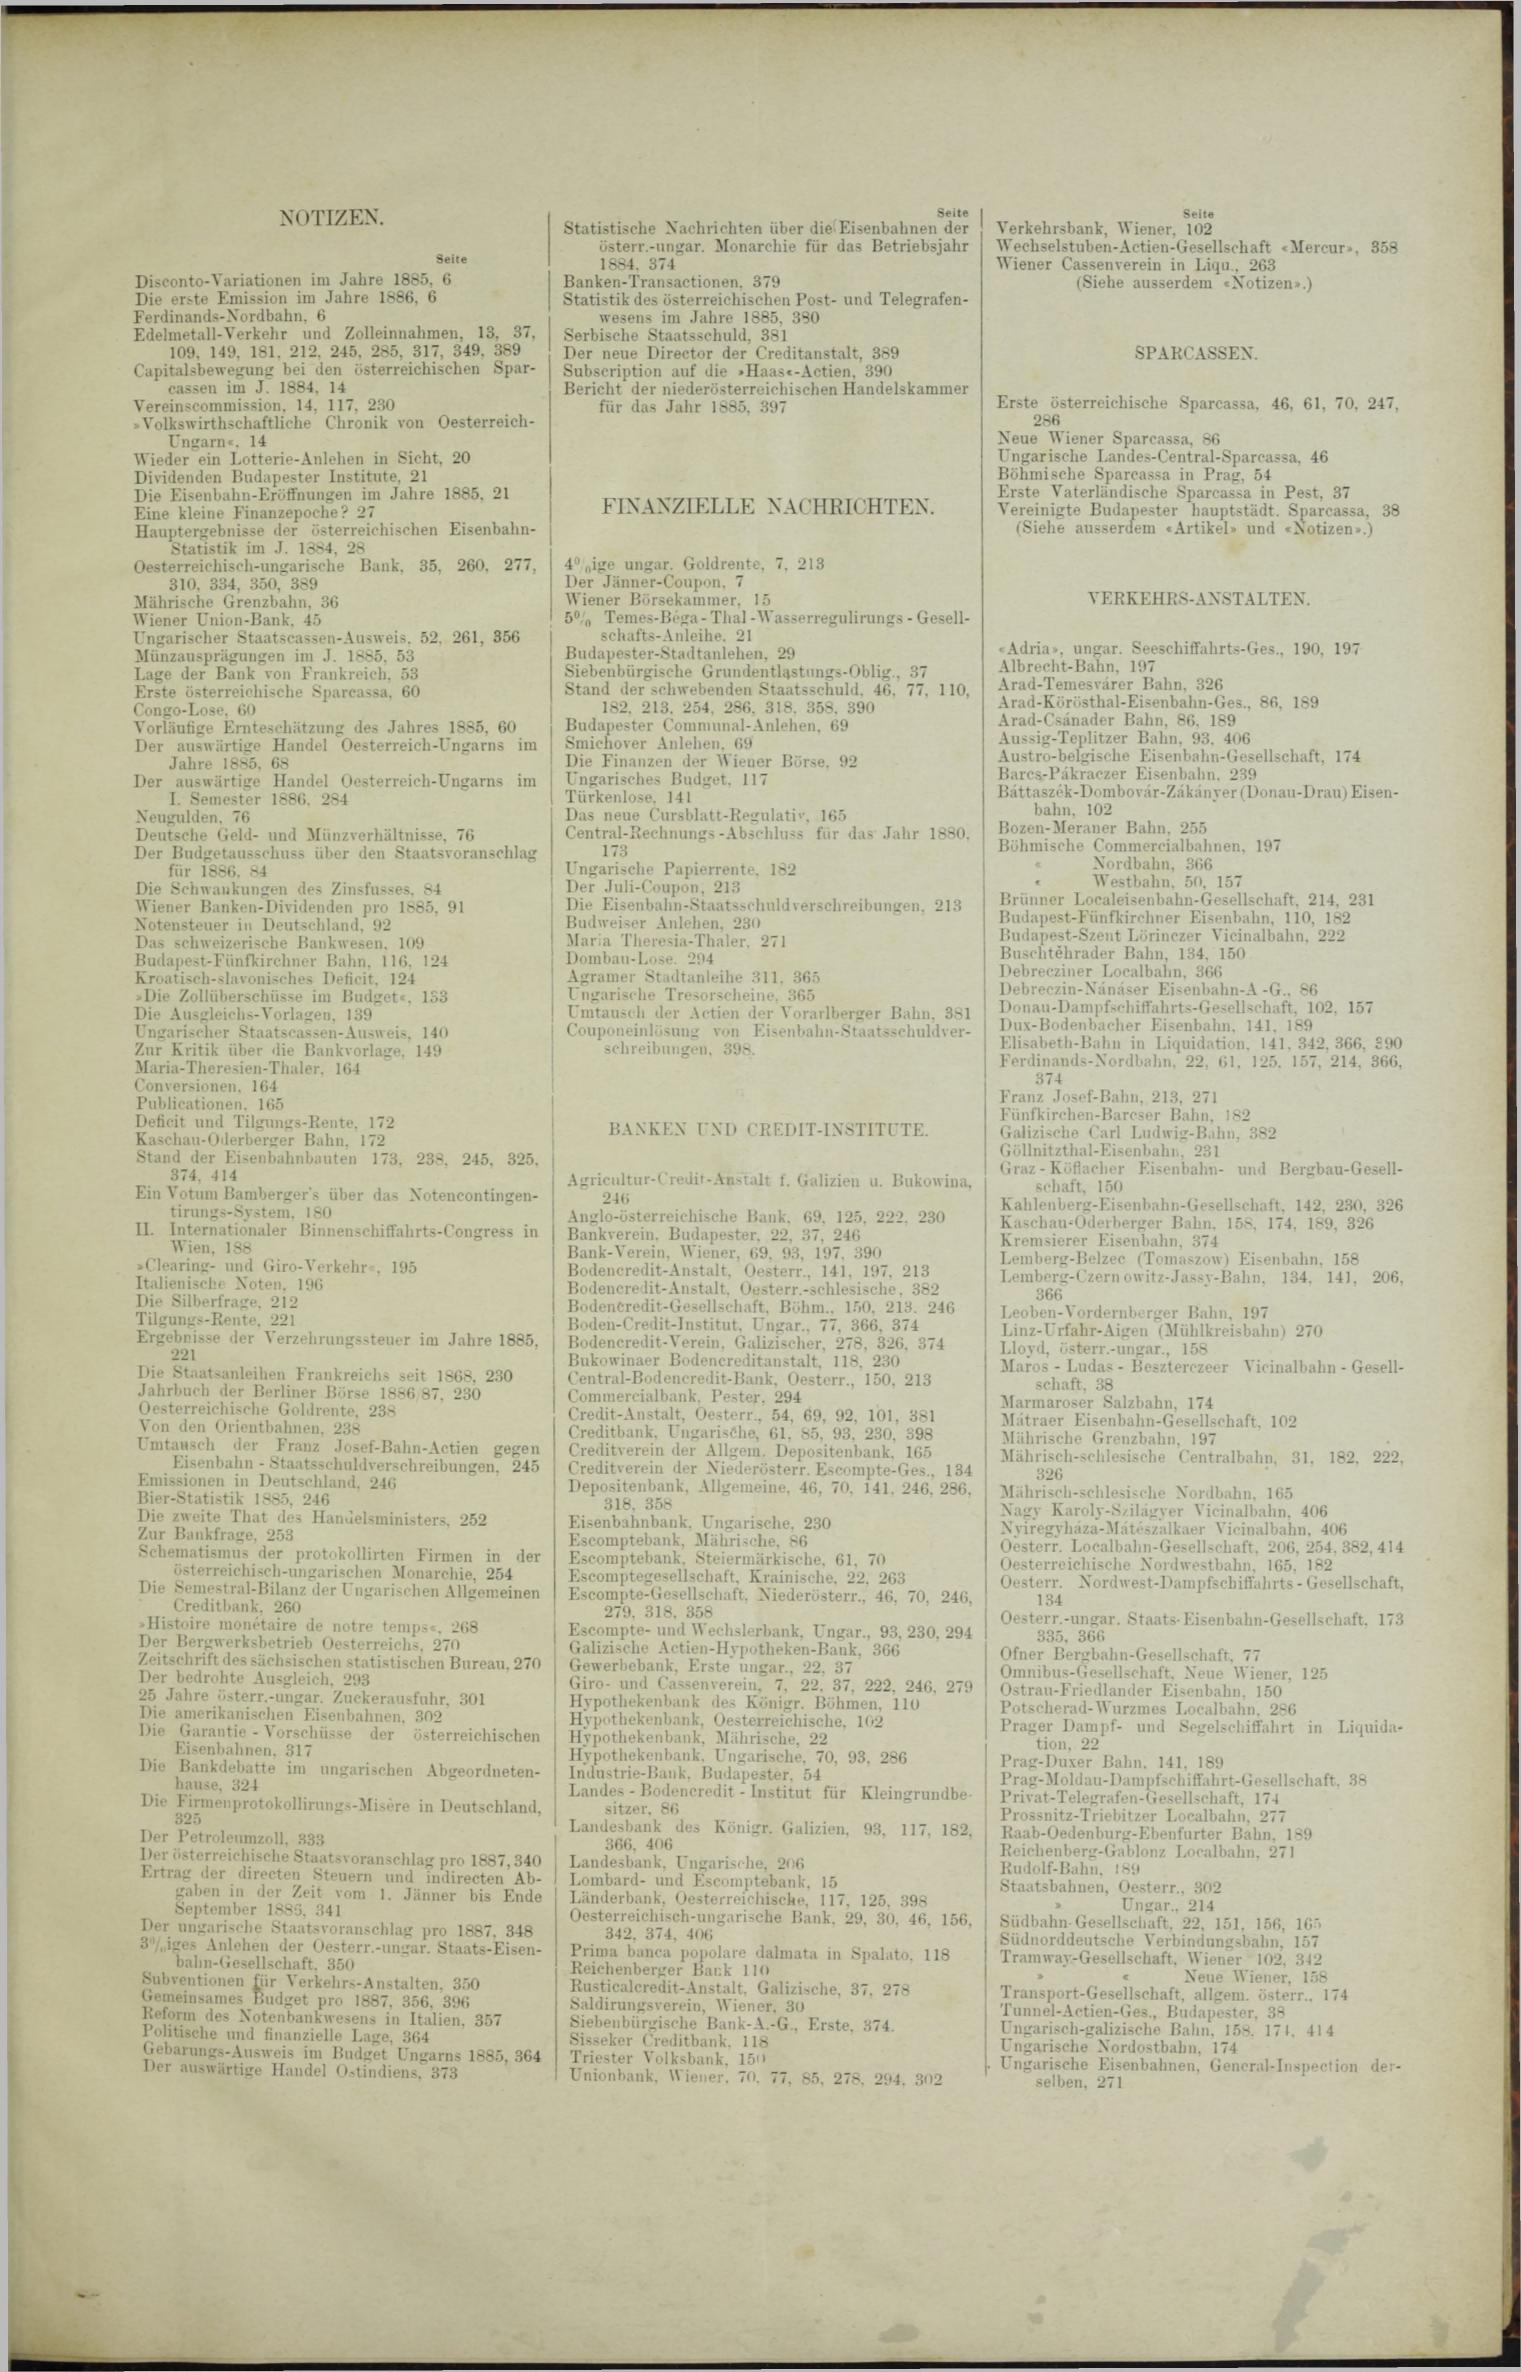 Der Tresor 14.10.1886 - Seite 11